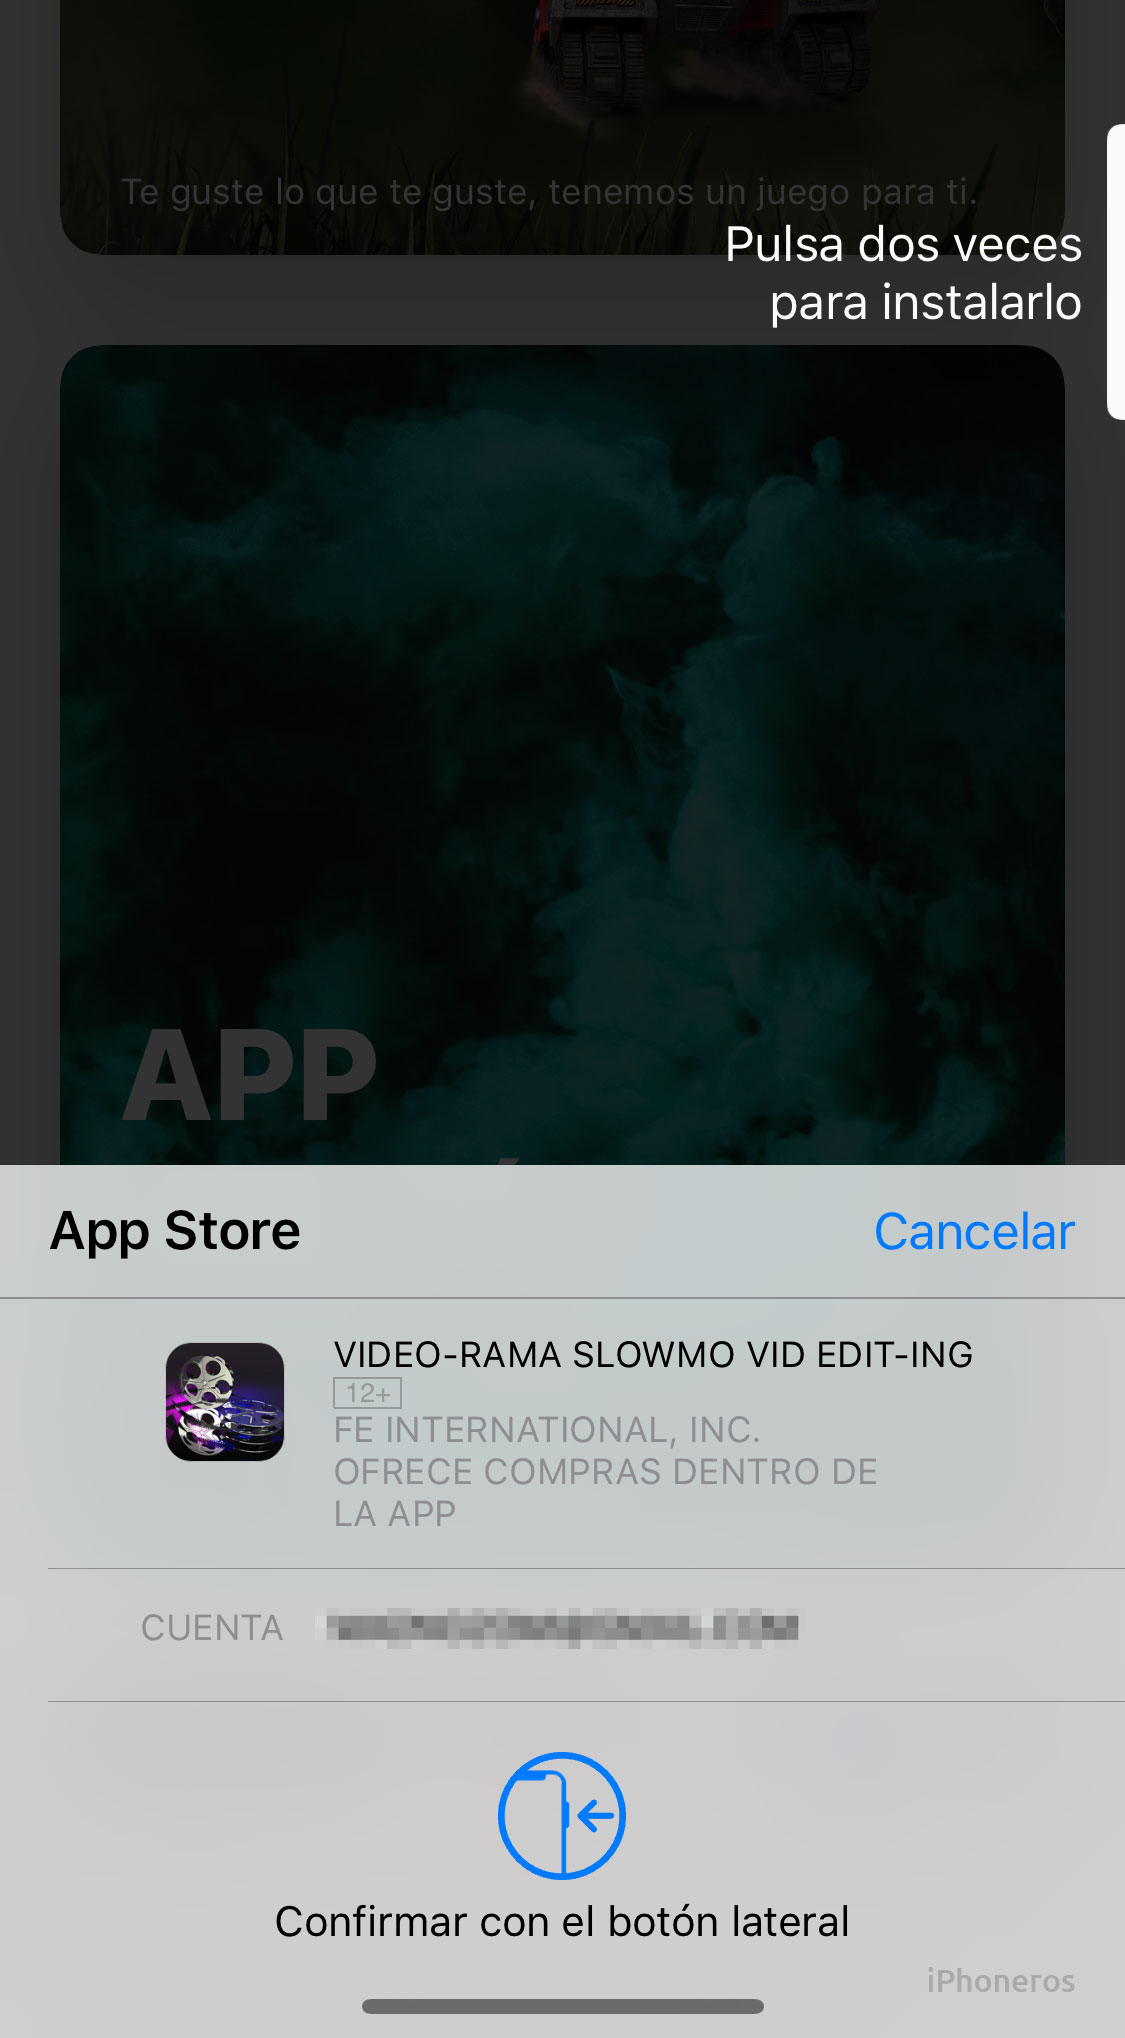 Confirmando descarga en la App Store con Face ID y dos pulsaciones en el botón de encendido